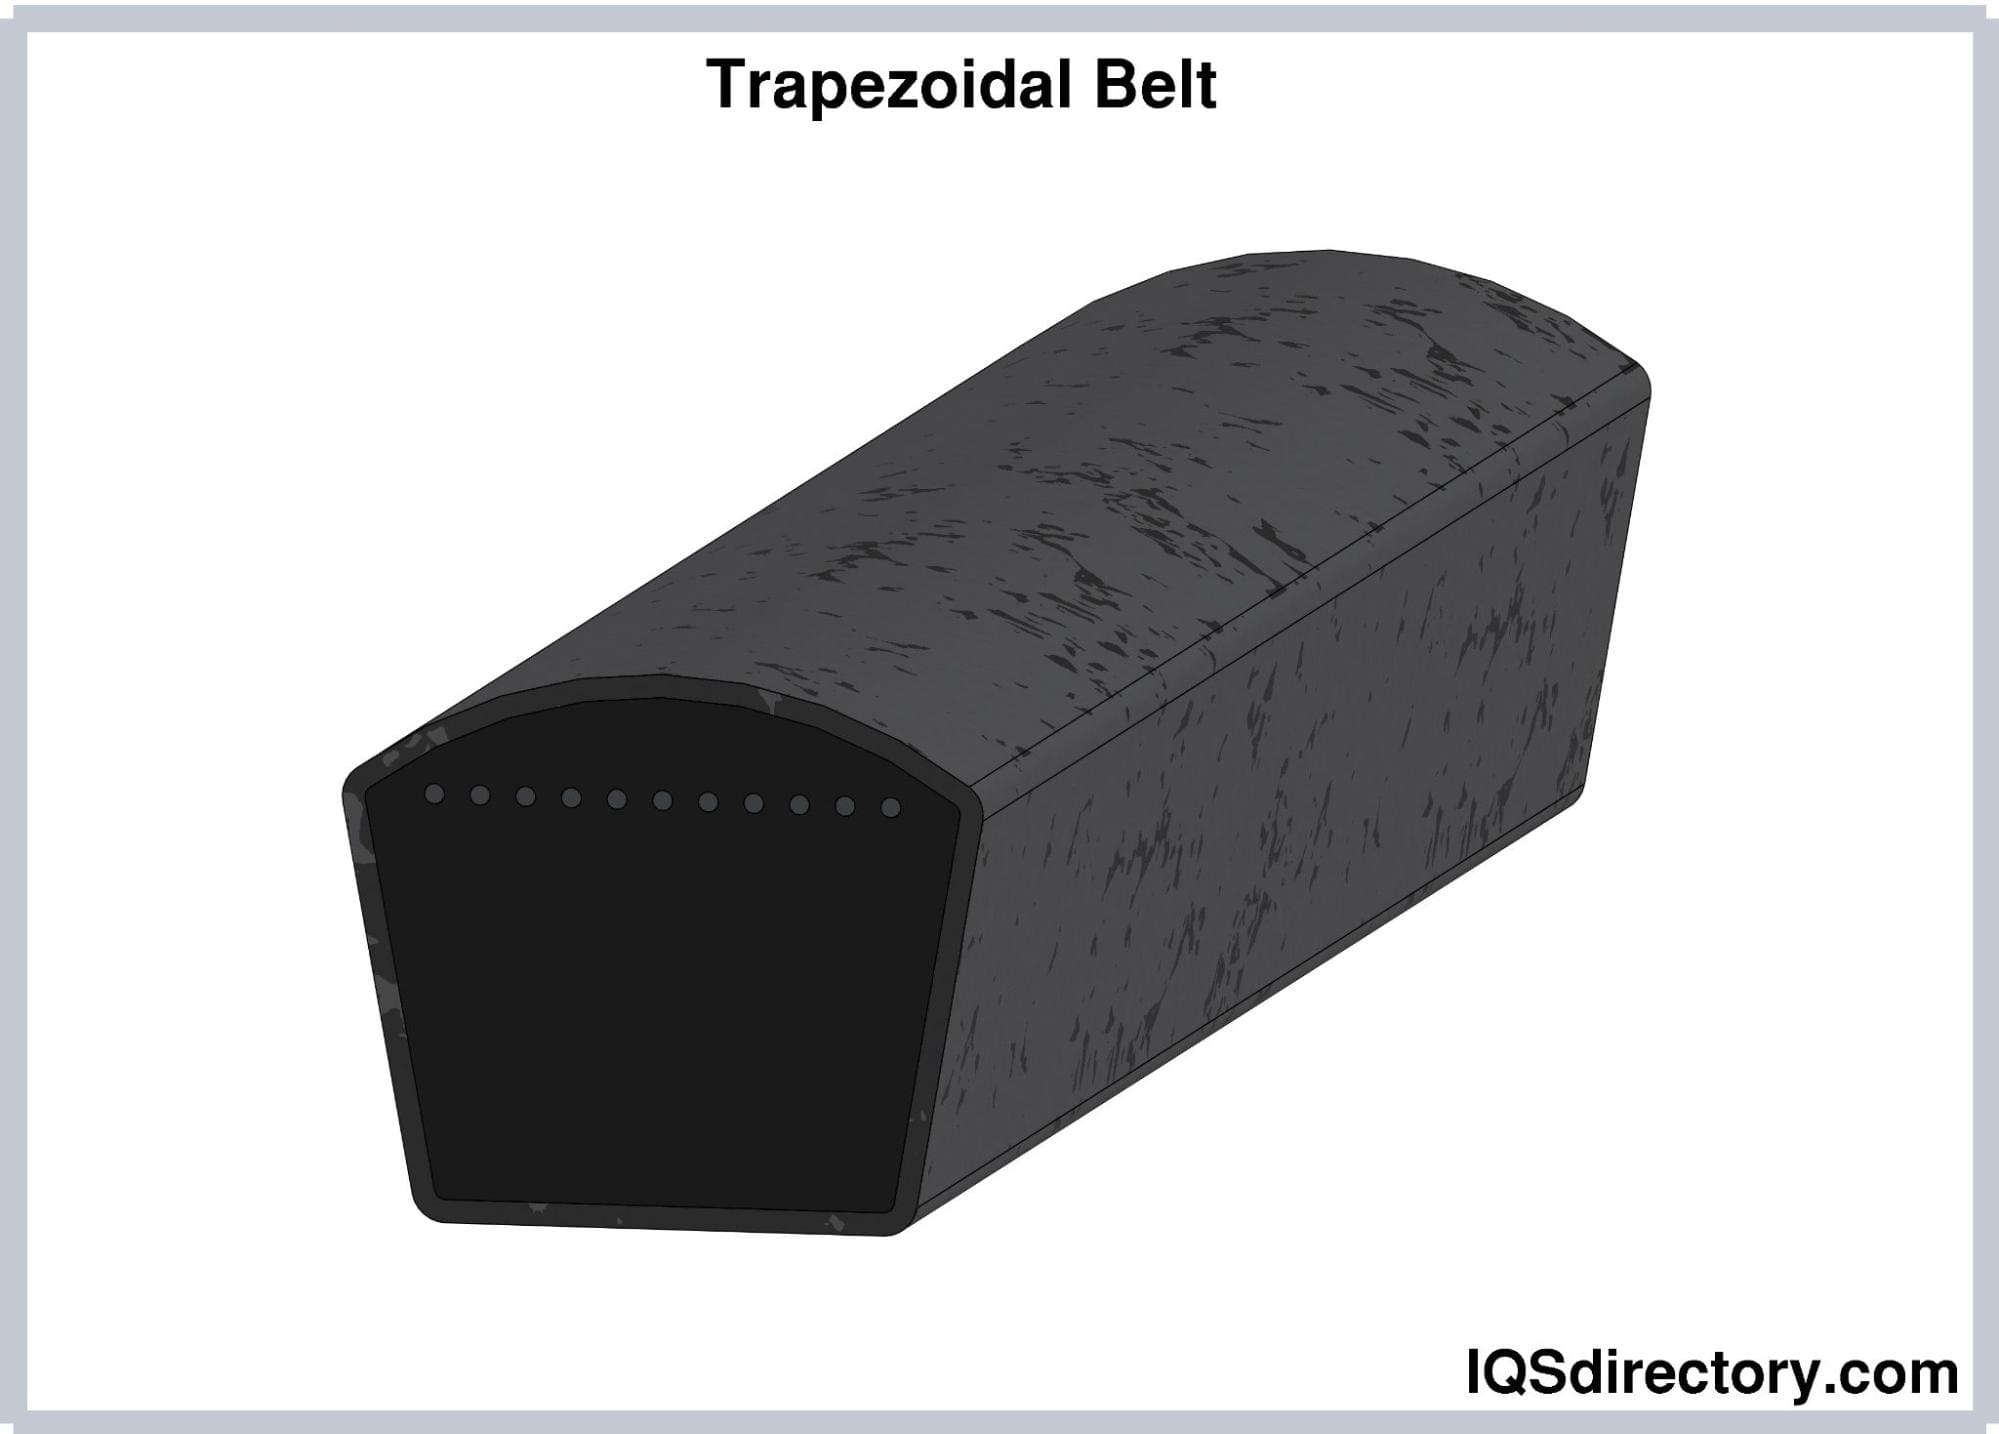 Trapezoidal Belt